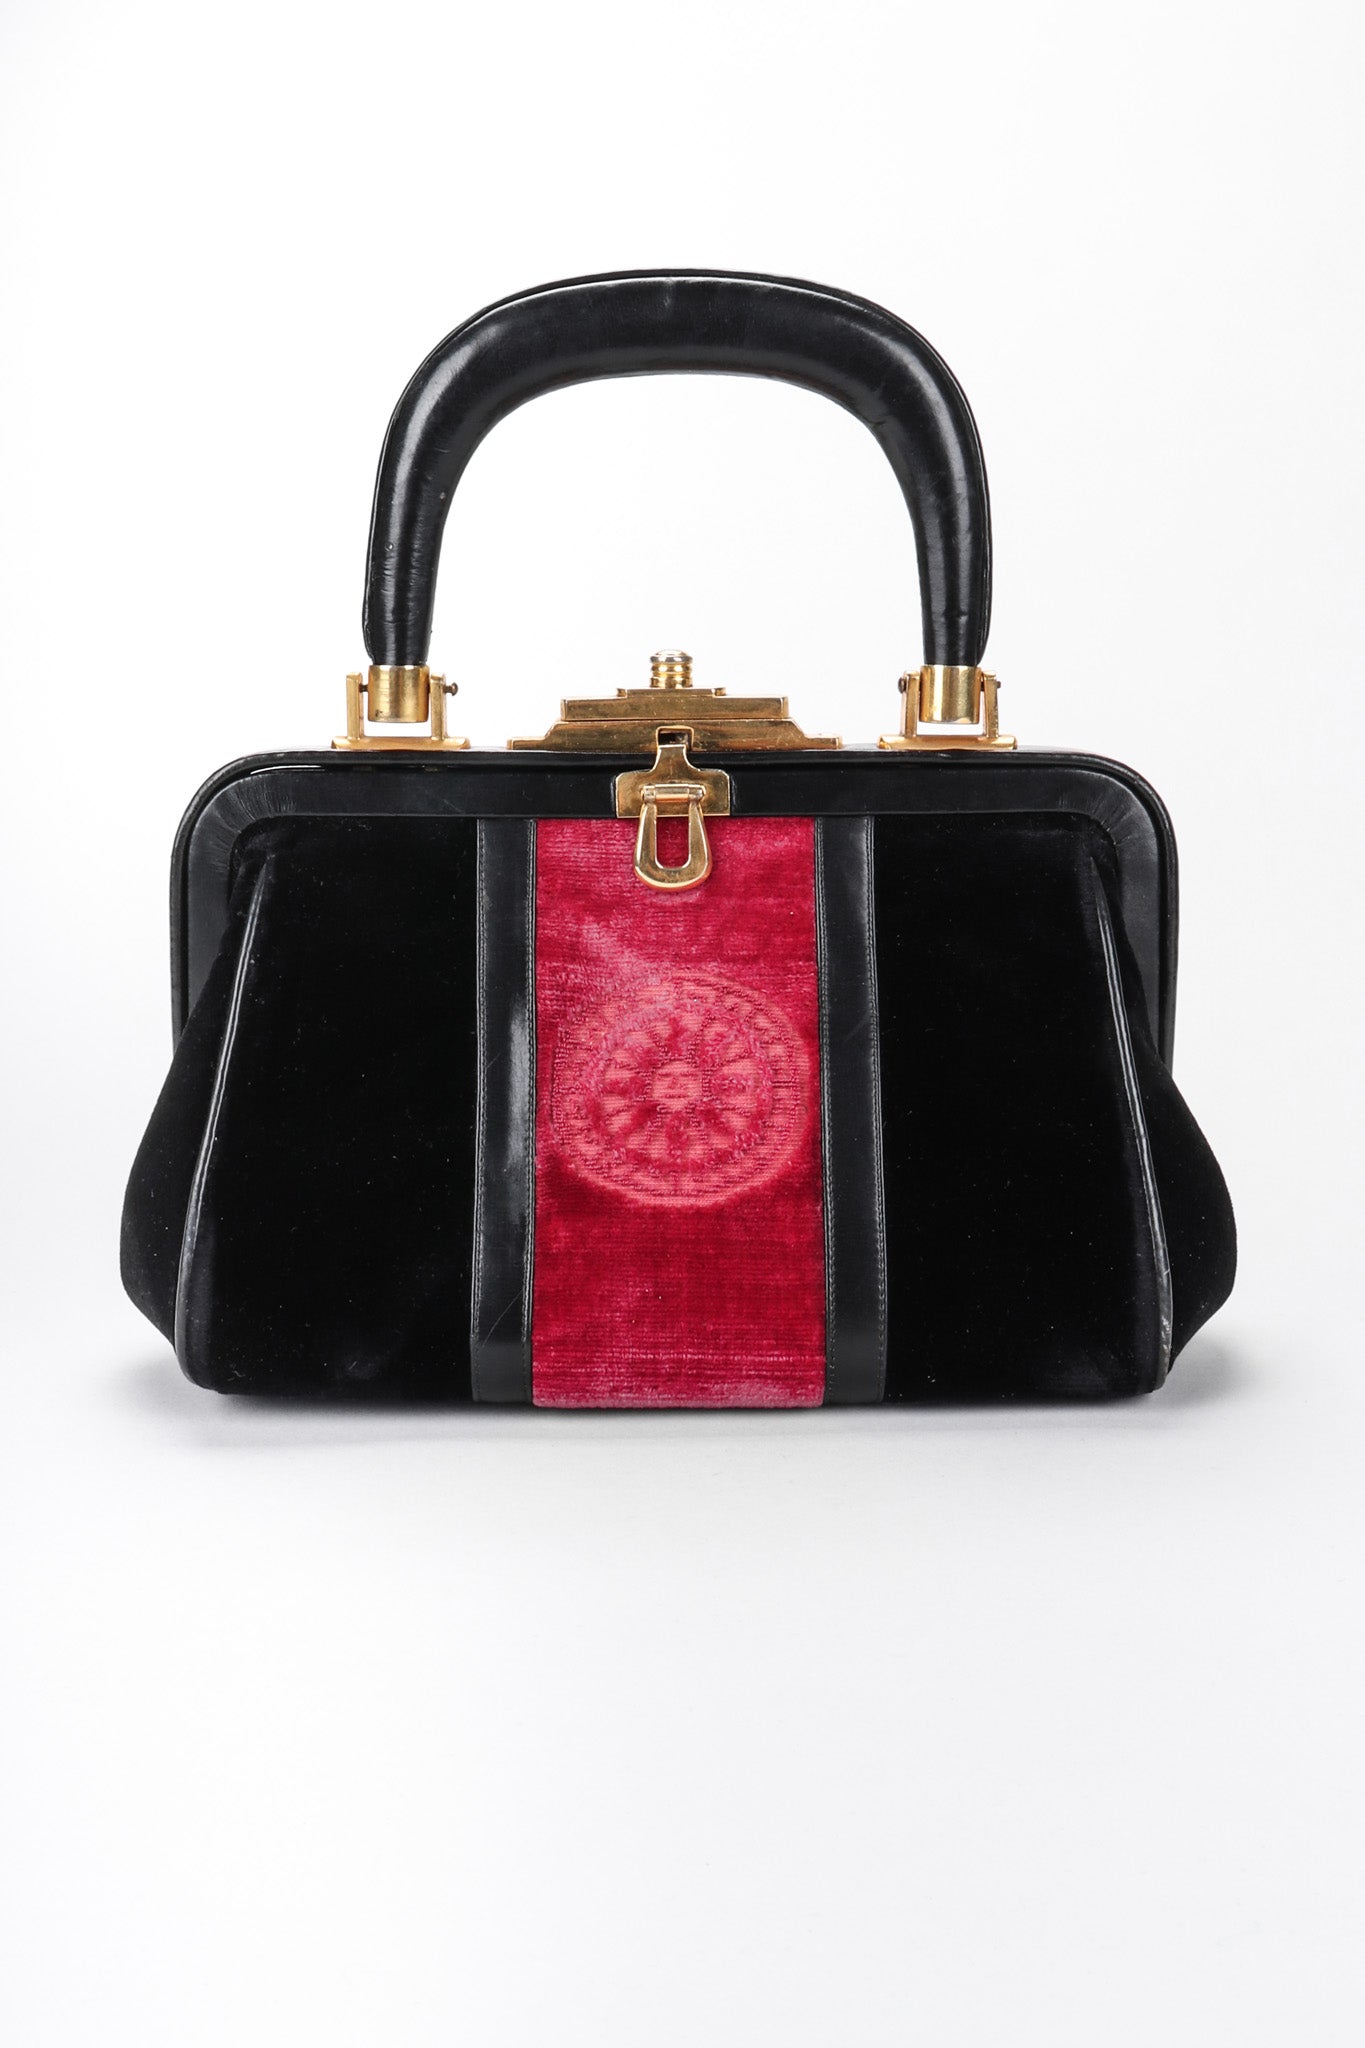 Recess Los Angeles Vintage Robera Di Camerino Signature Velvet Black Red Mini Bagonghi Bag